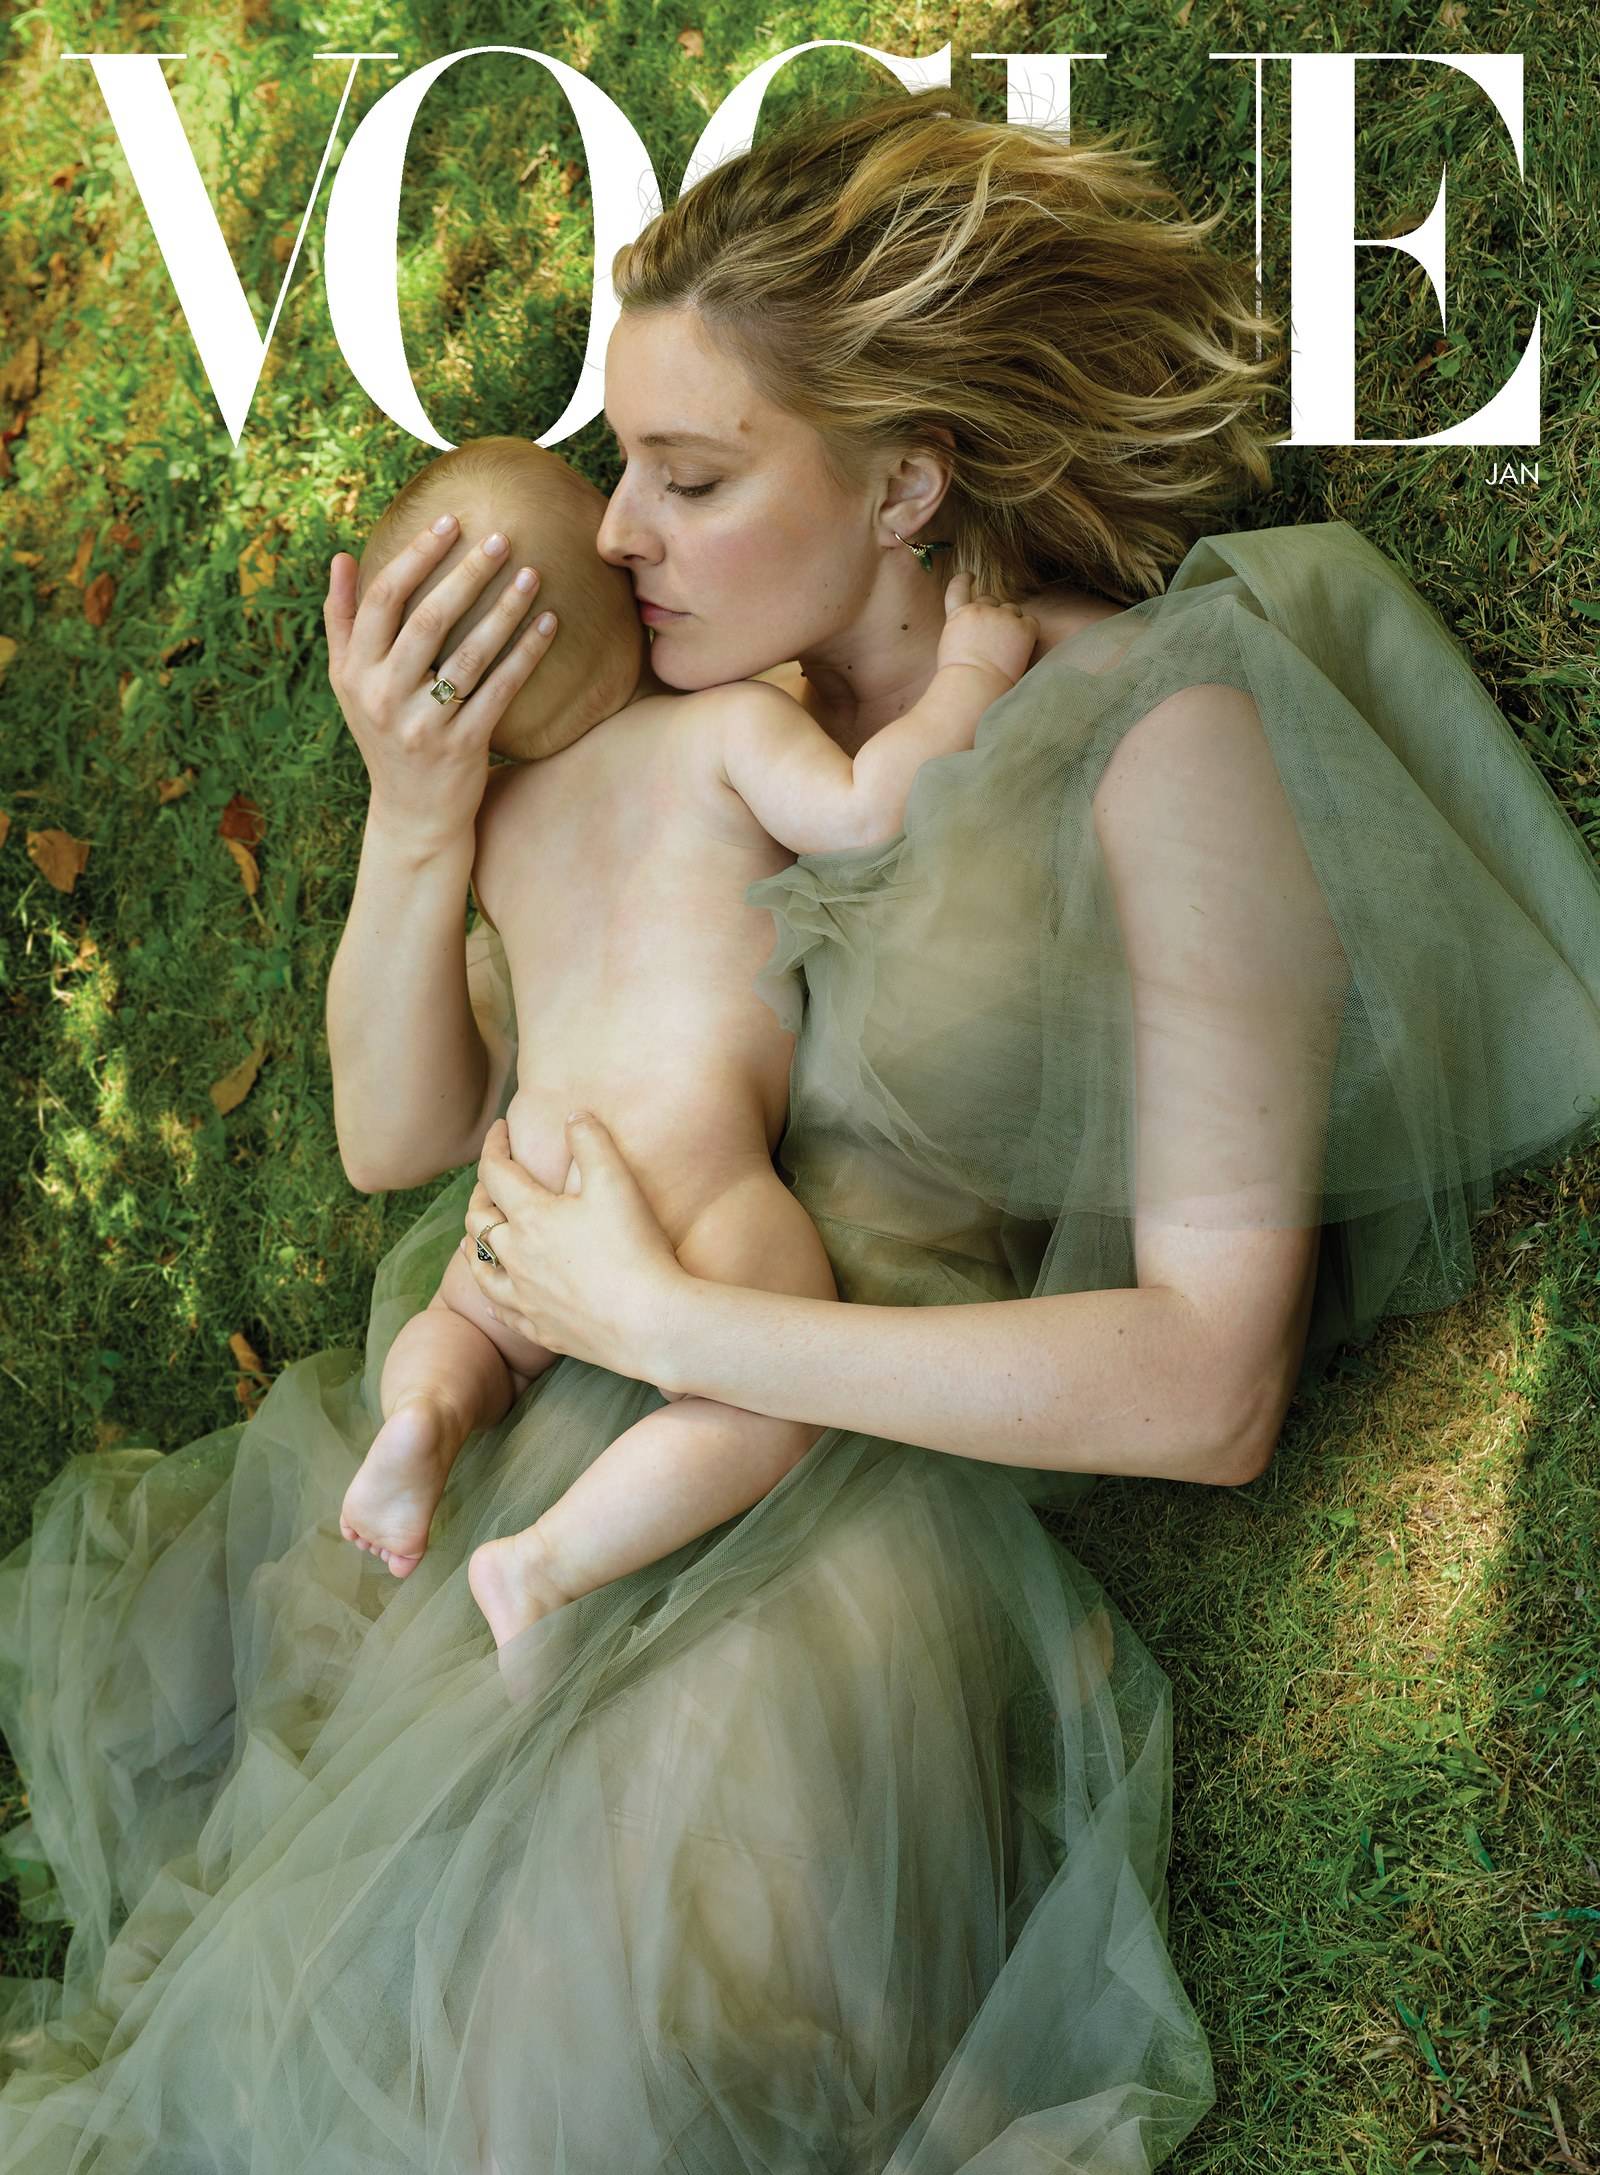 January Vogue Cover features Monique Péan jewelry